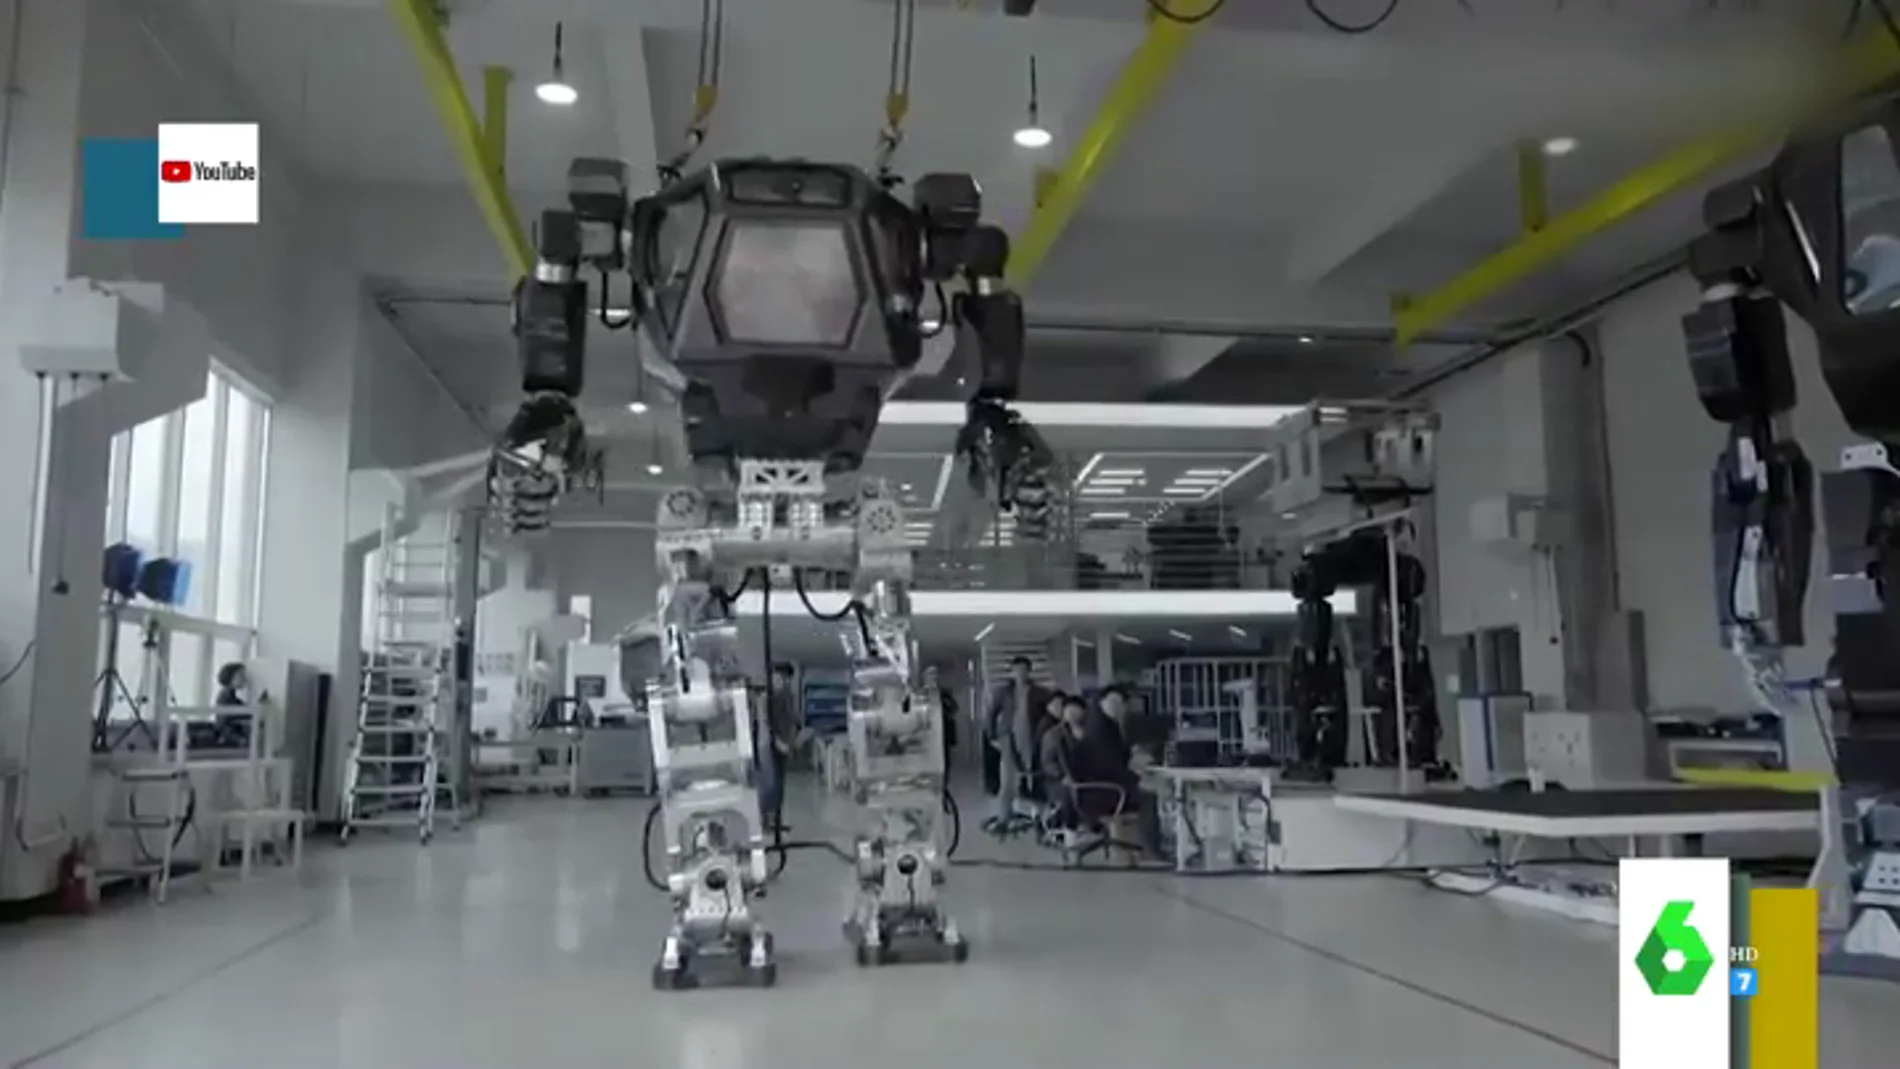 Con metralletas incorporadas y casi 20 metros de altura: estos son los impresionantes robots gigantes que hay en el mercado